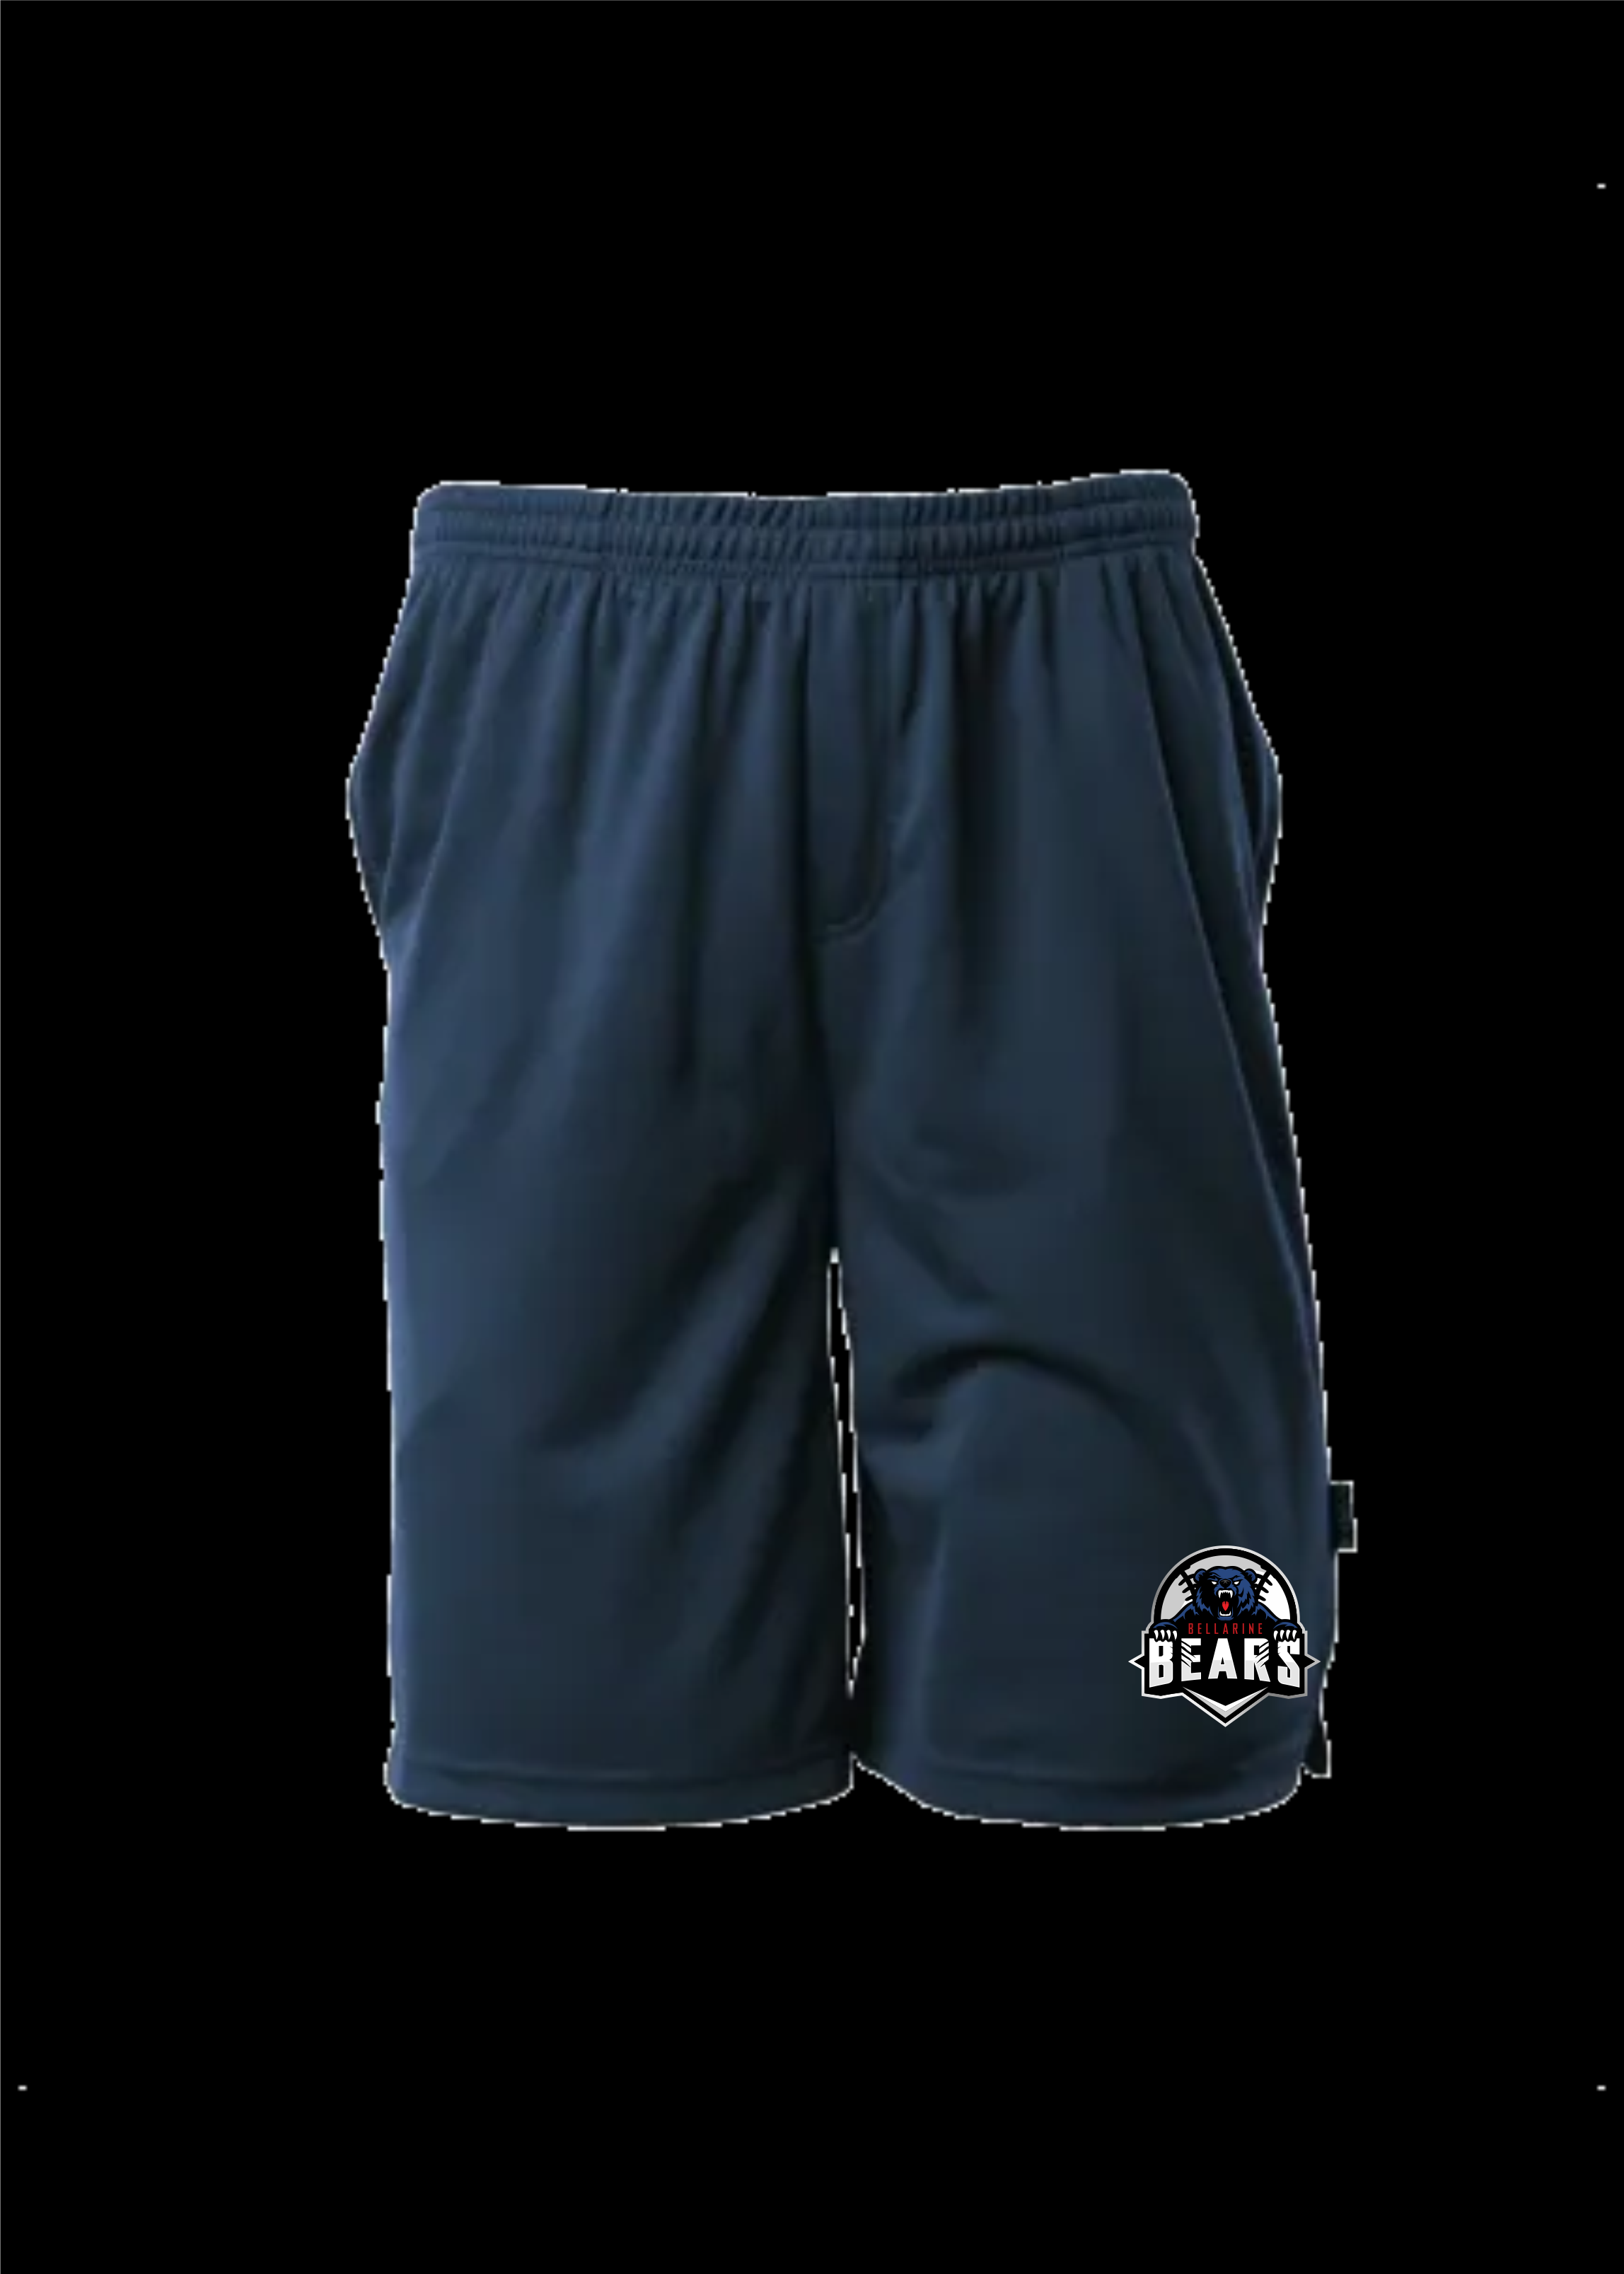 Navy Sports Shorts